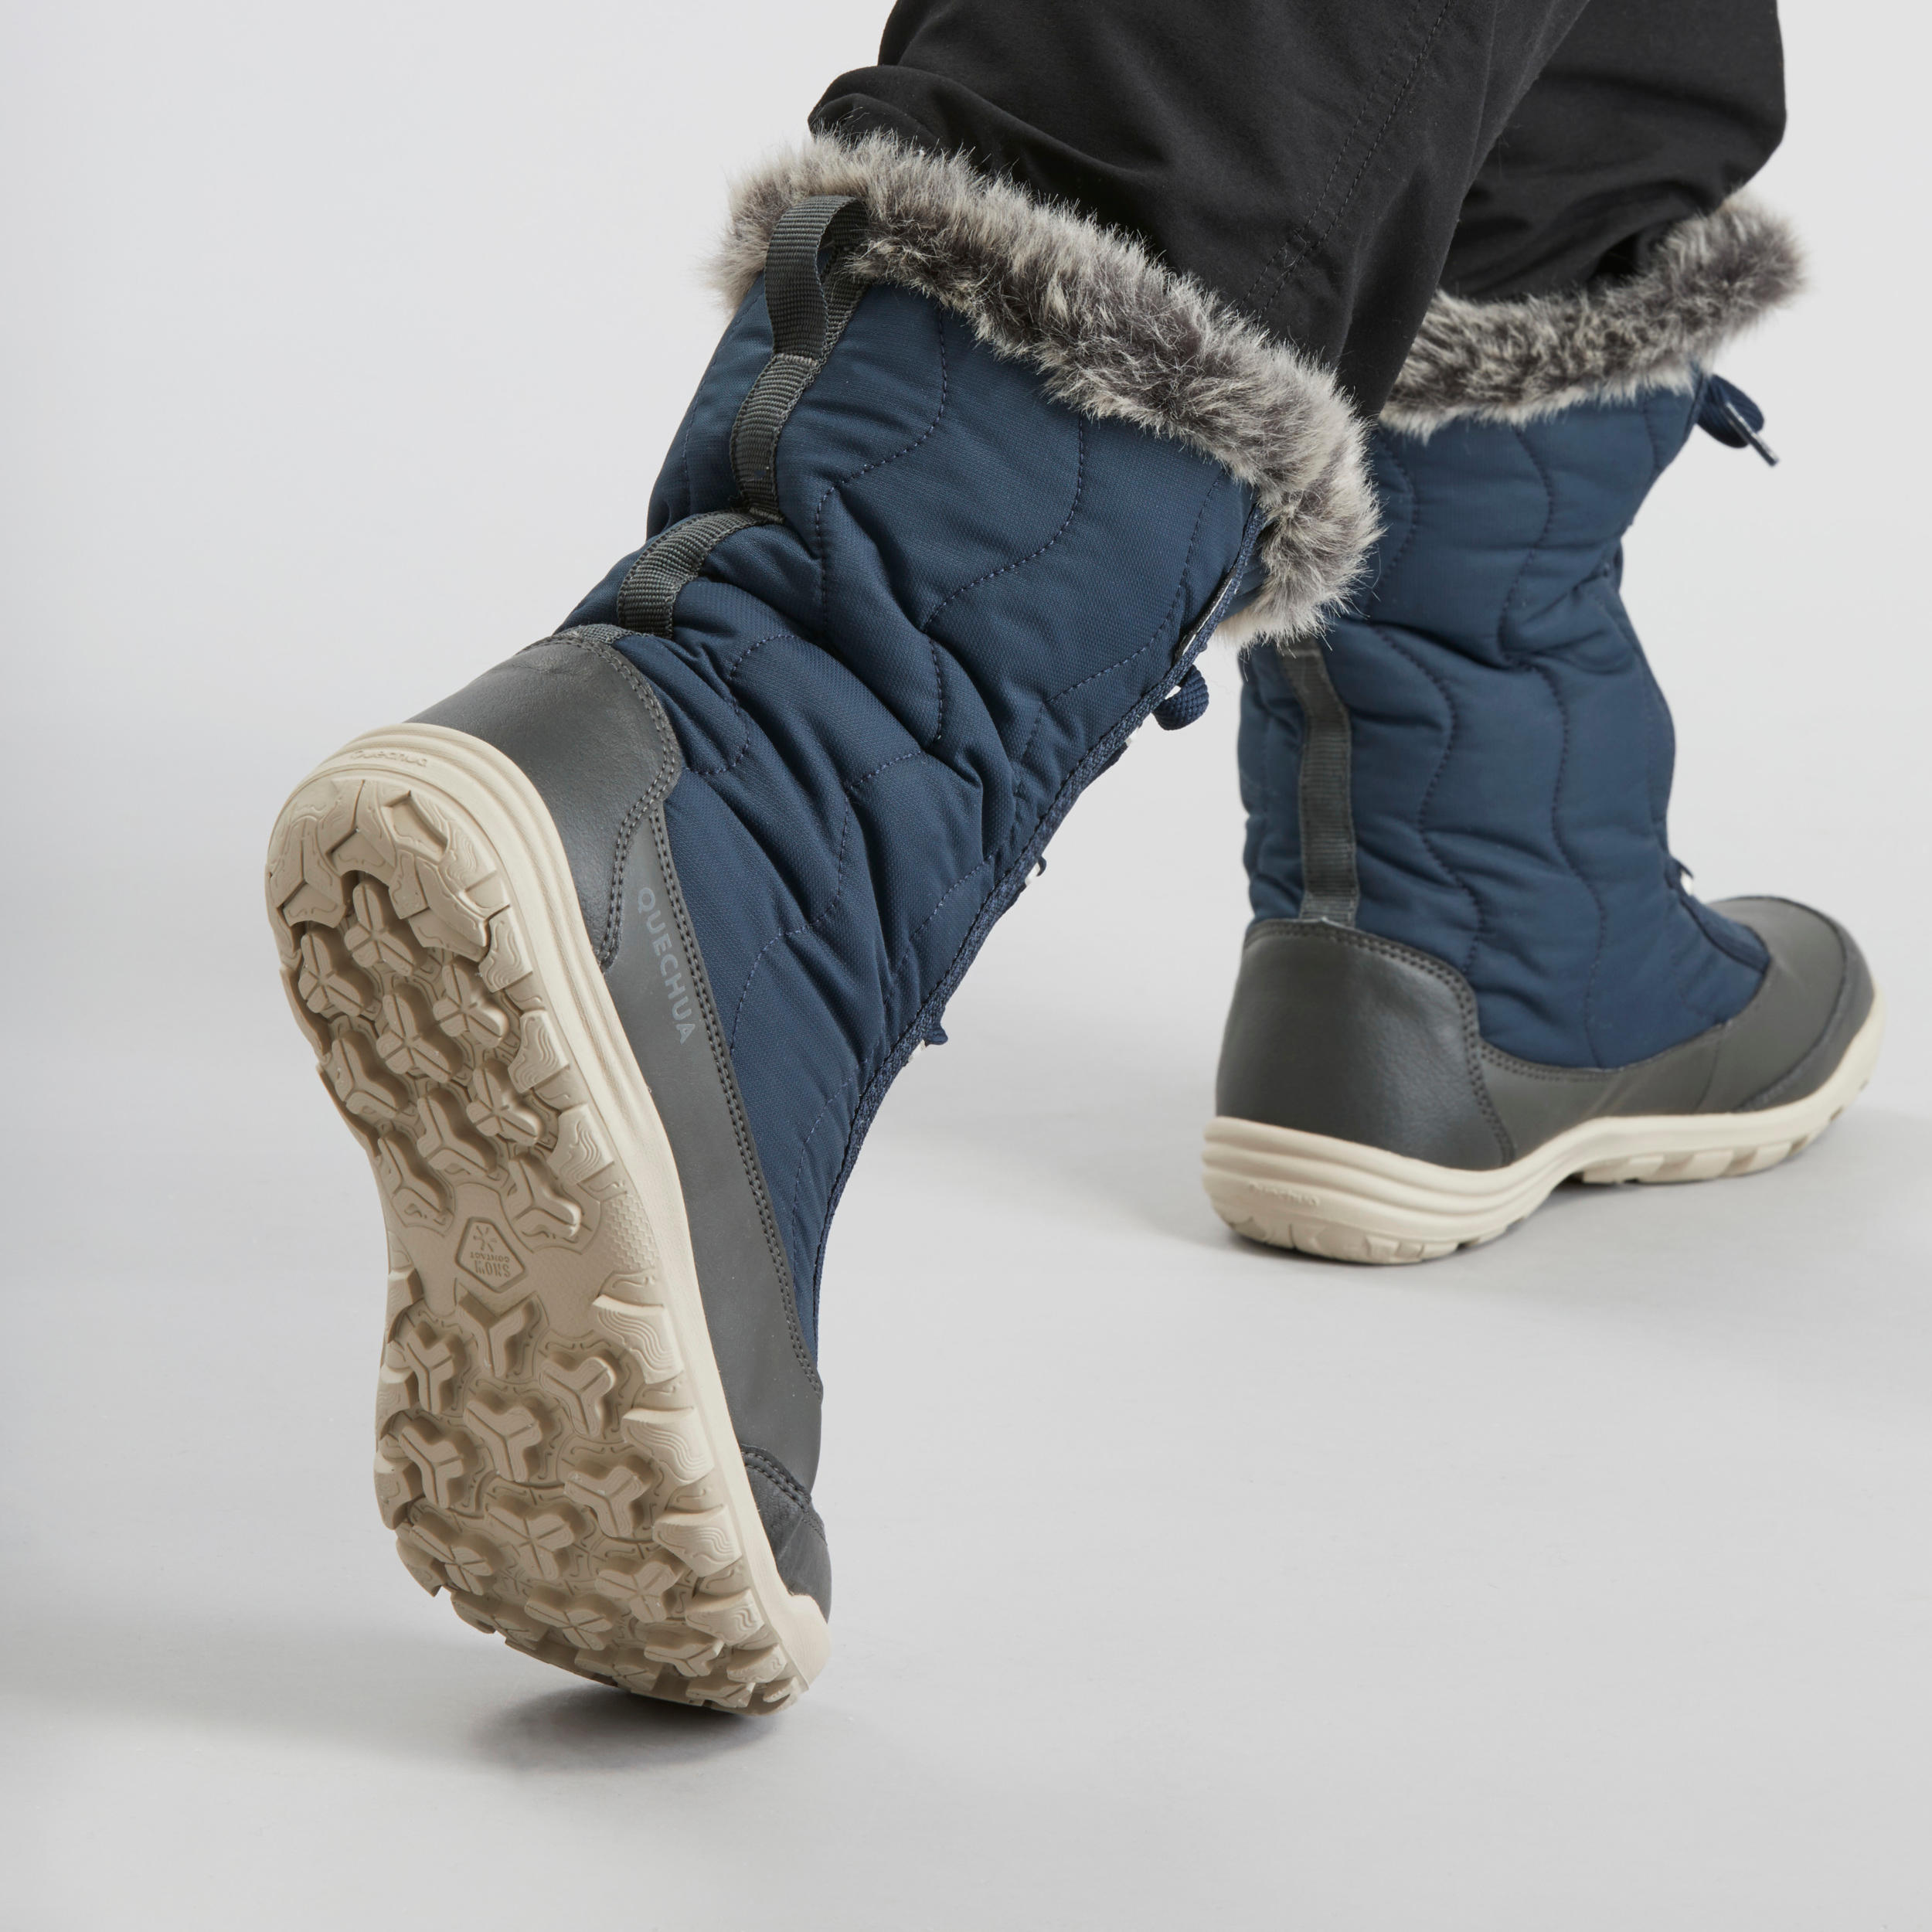 Women's Winter Boots - SH 500 - QUECHUA